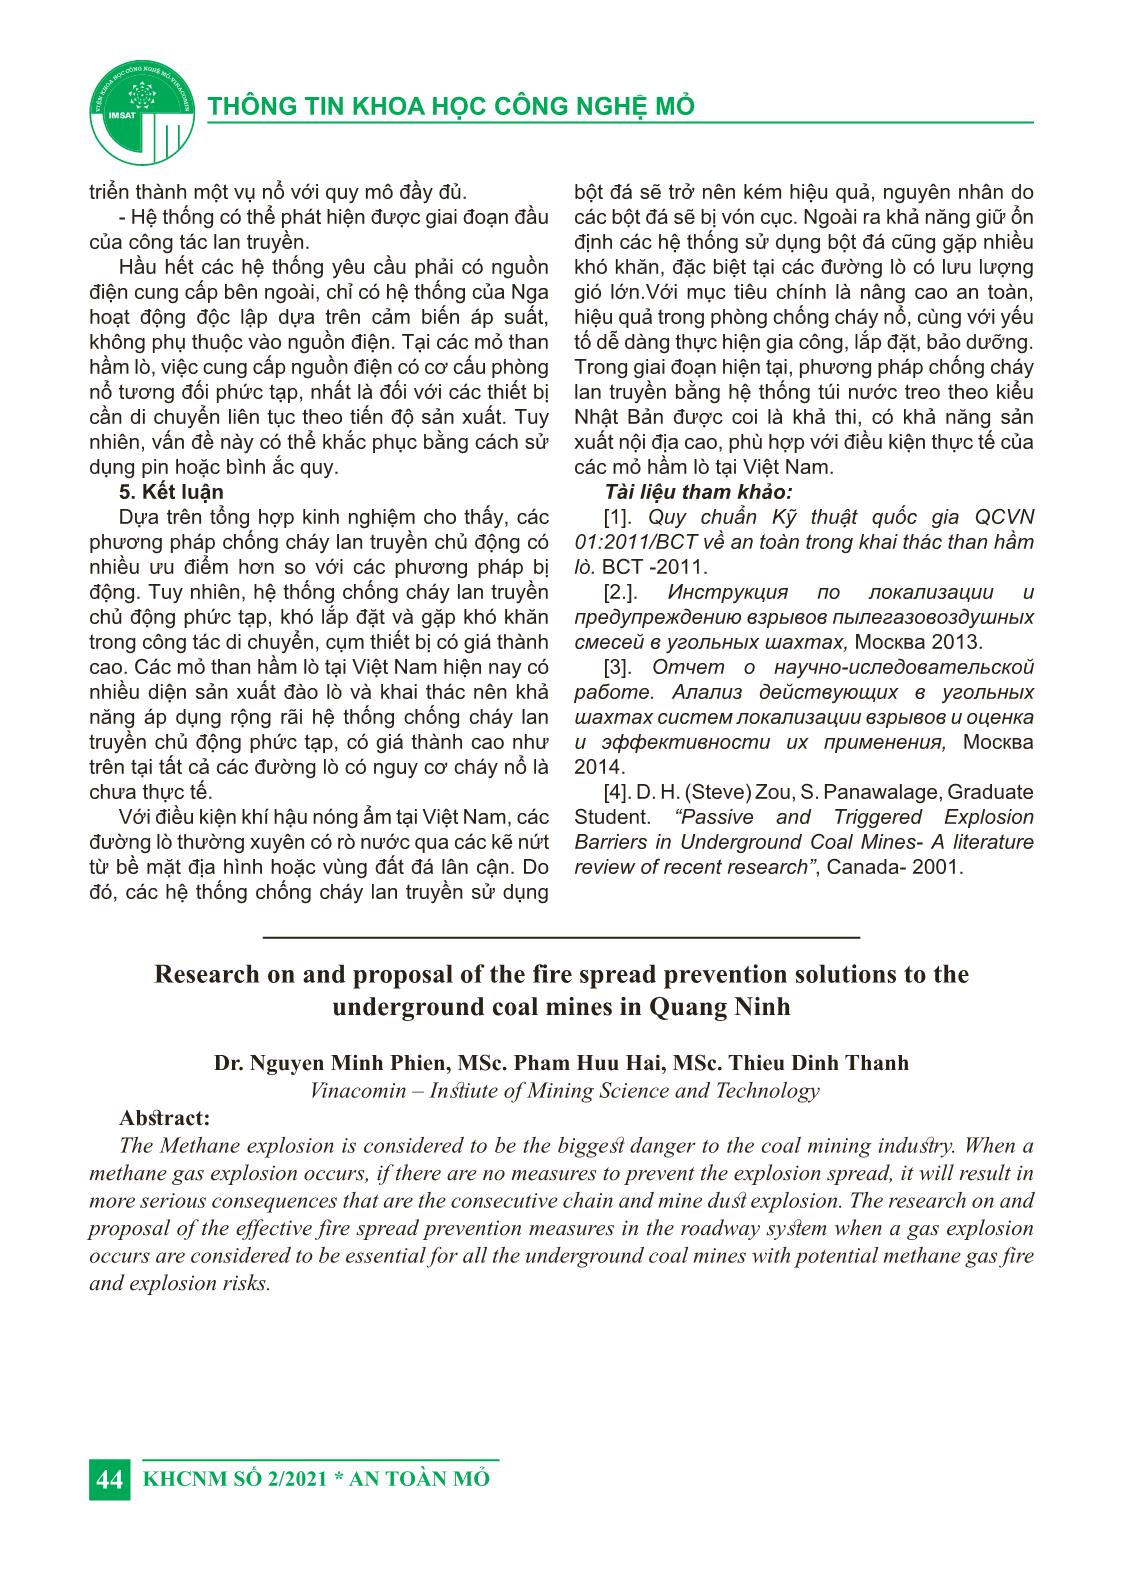 Nghiên cứu đề xuất giải pháp chống cháy lan truyền cho các mỏ than hầm lò vùng Quảng Ninh trang 7